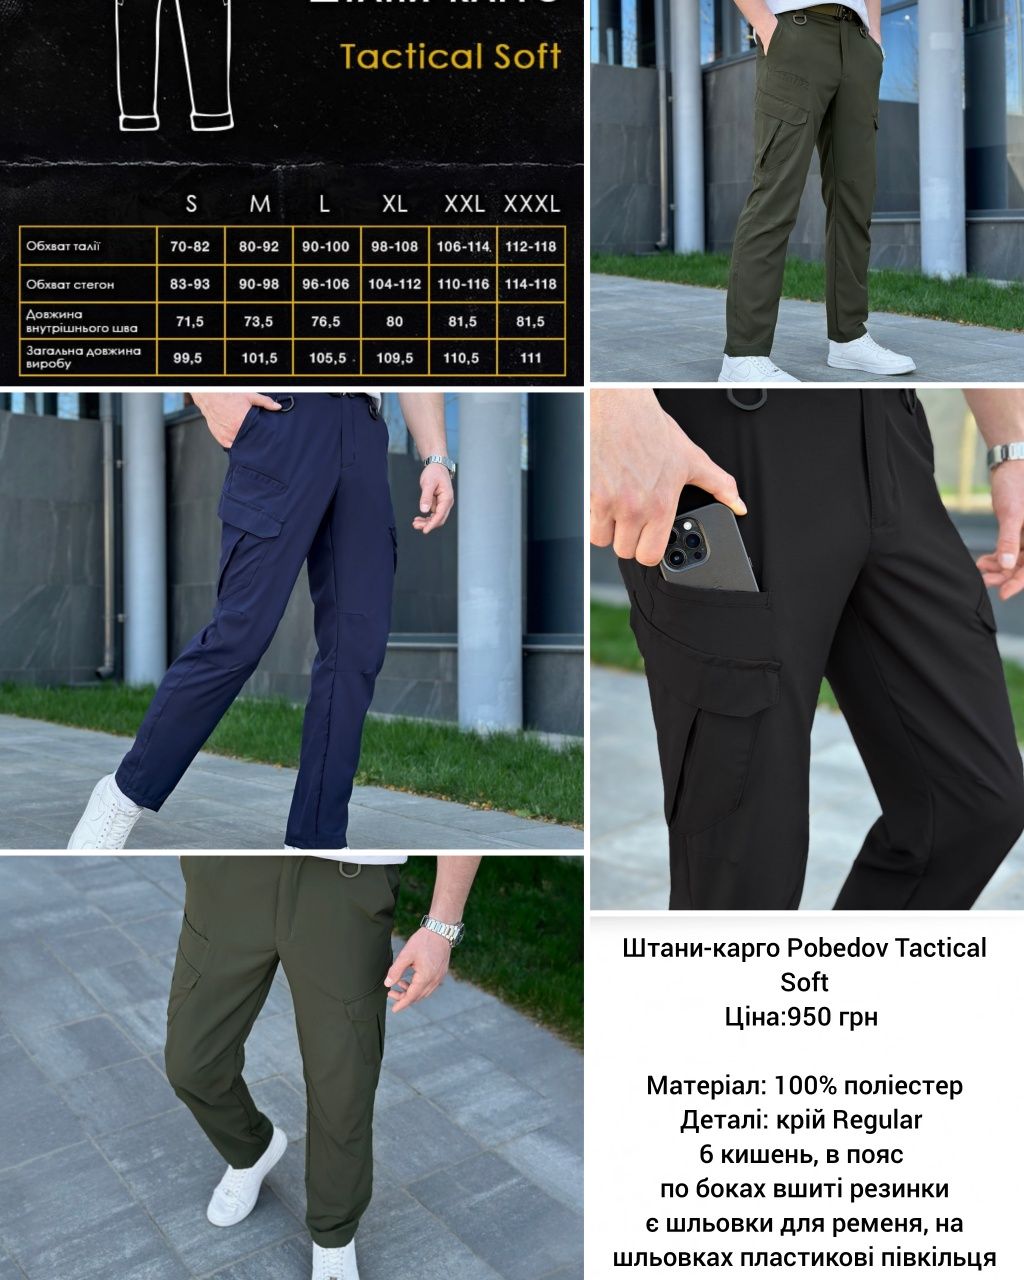 Легкі та бюджетні штани із софту